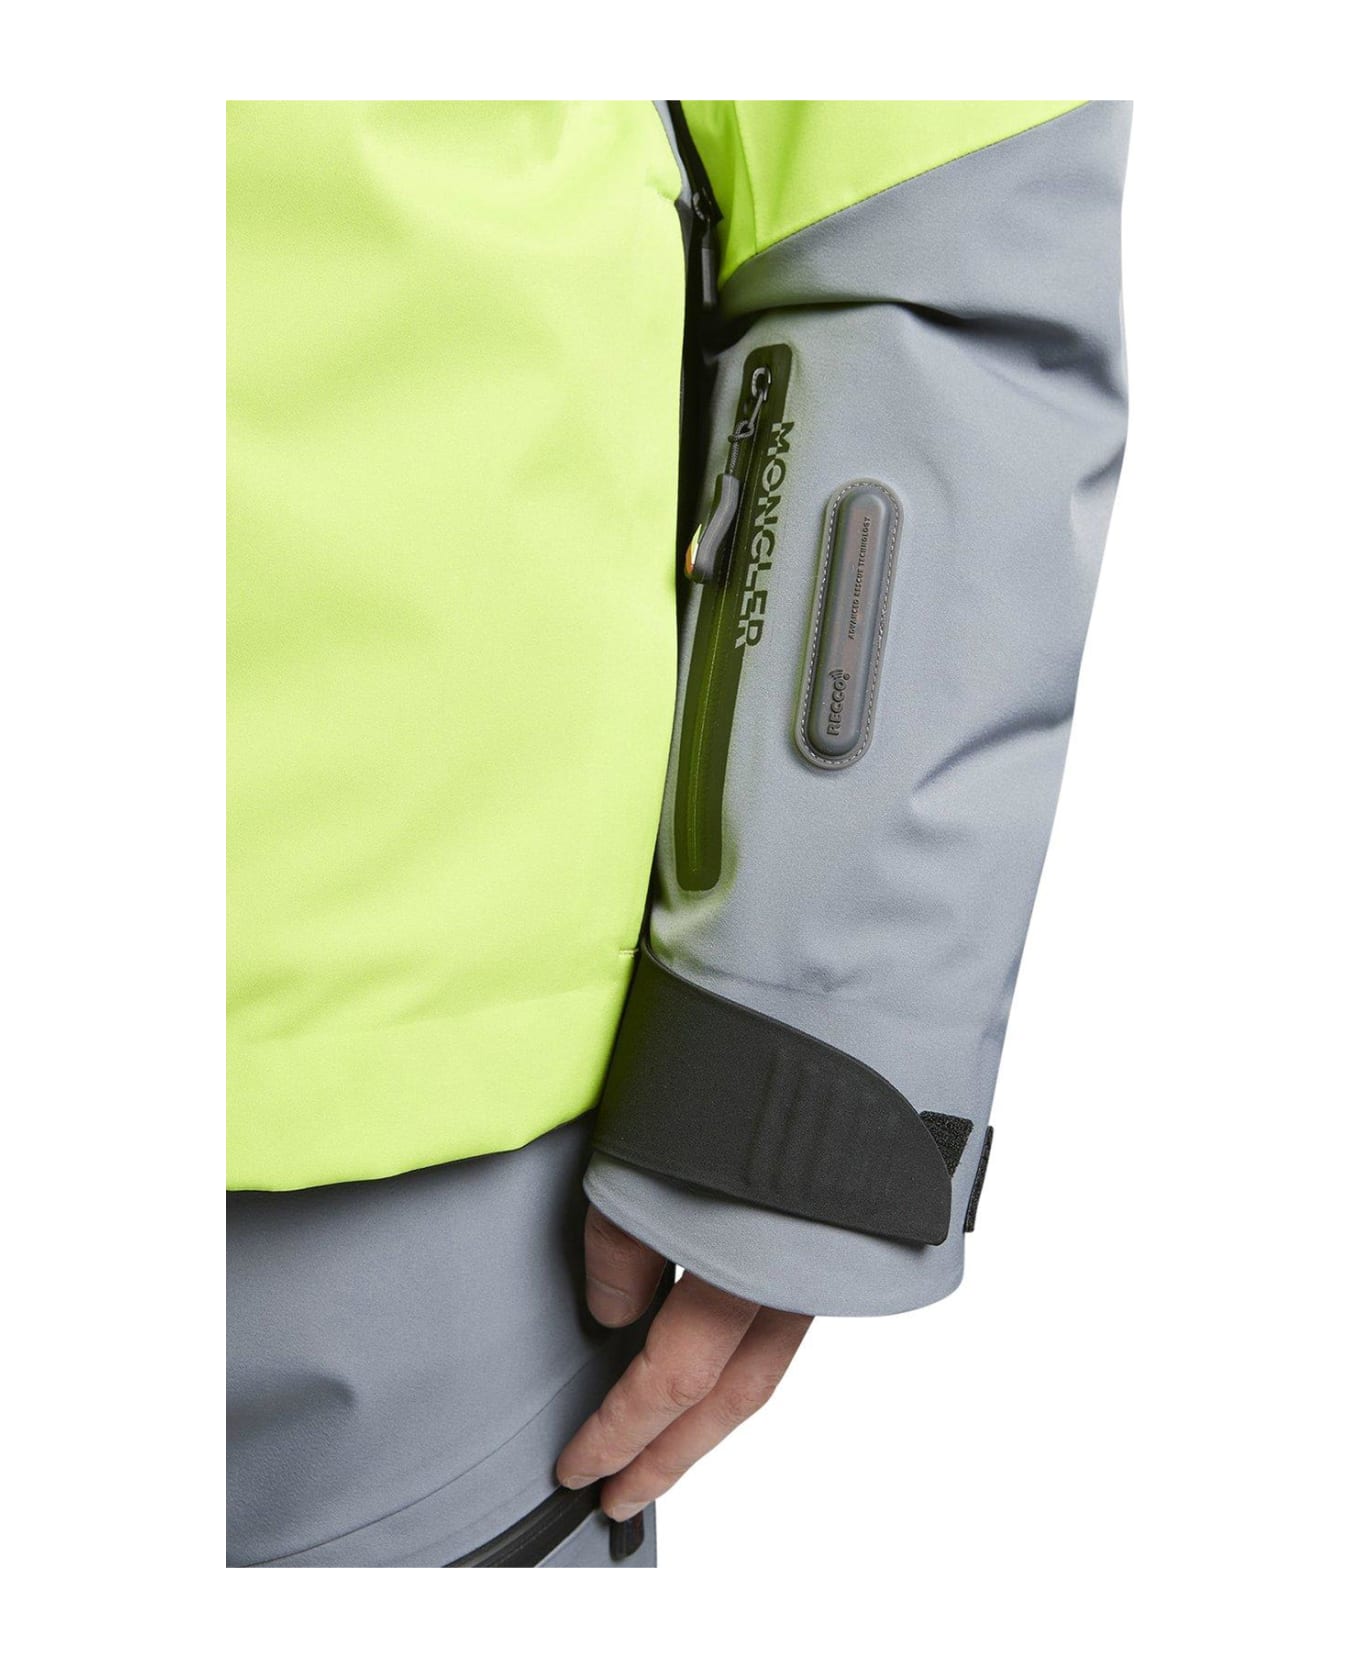 Moncler Grenoble Cerniat Padded Jacket - LIGHT GREEN